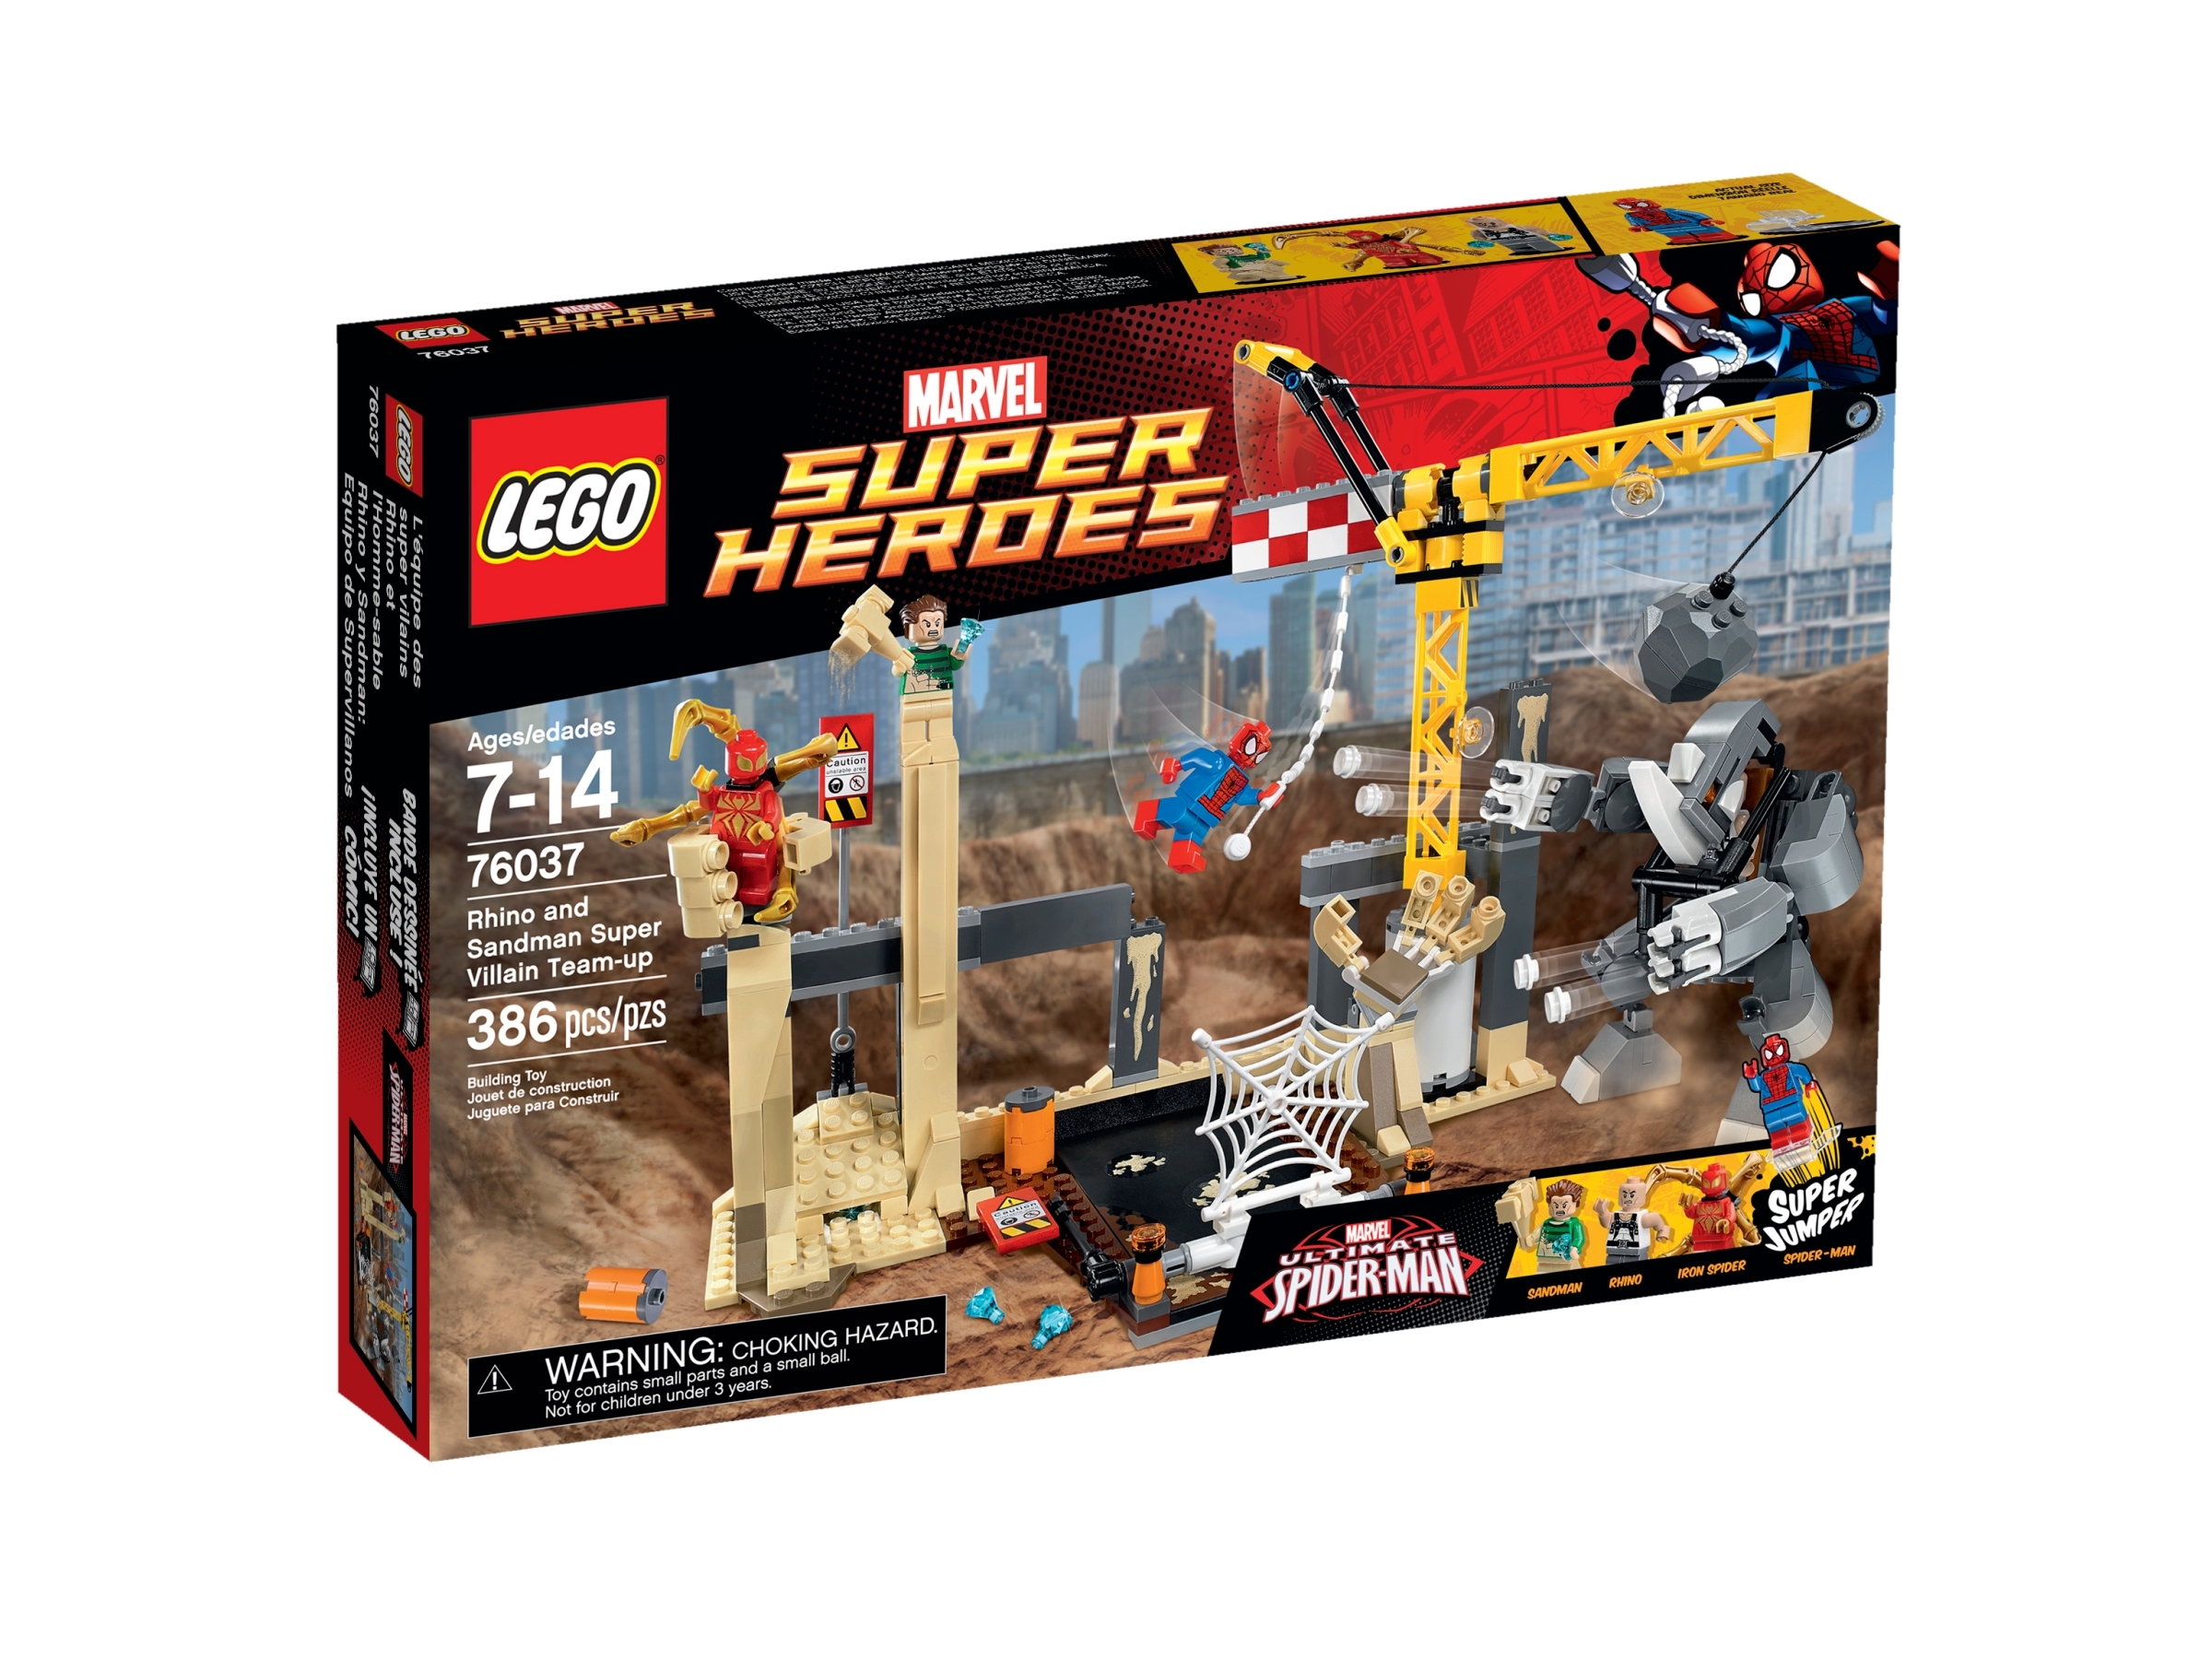 spiderman iron spider lego